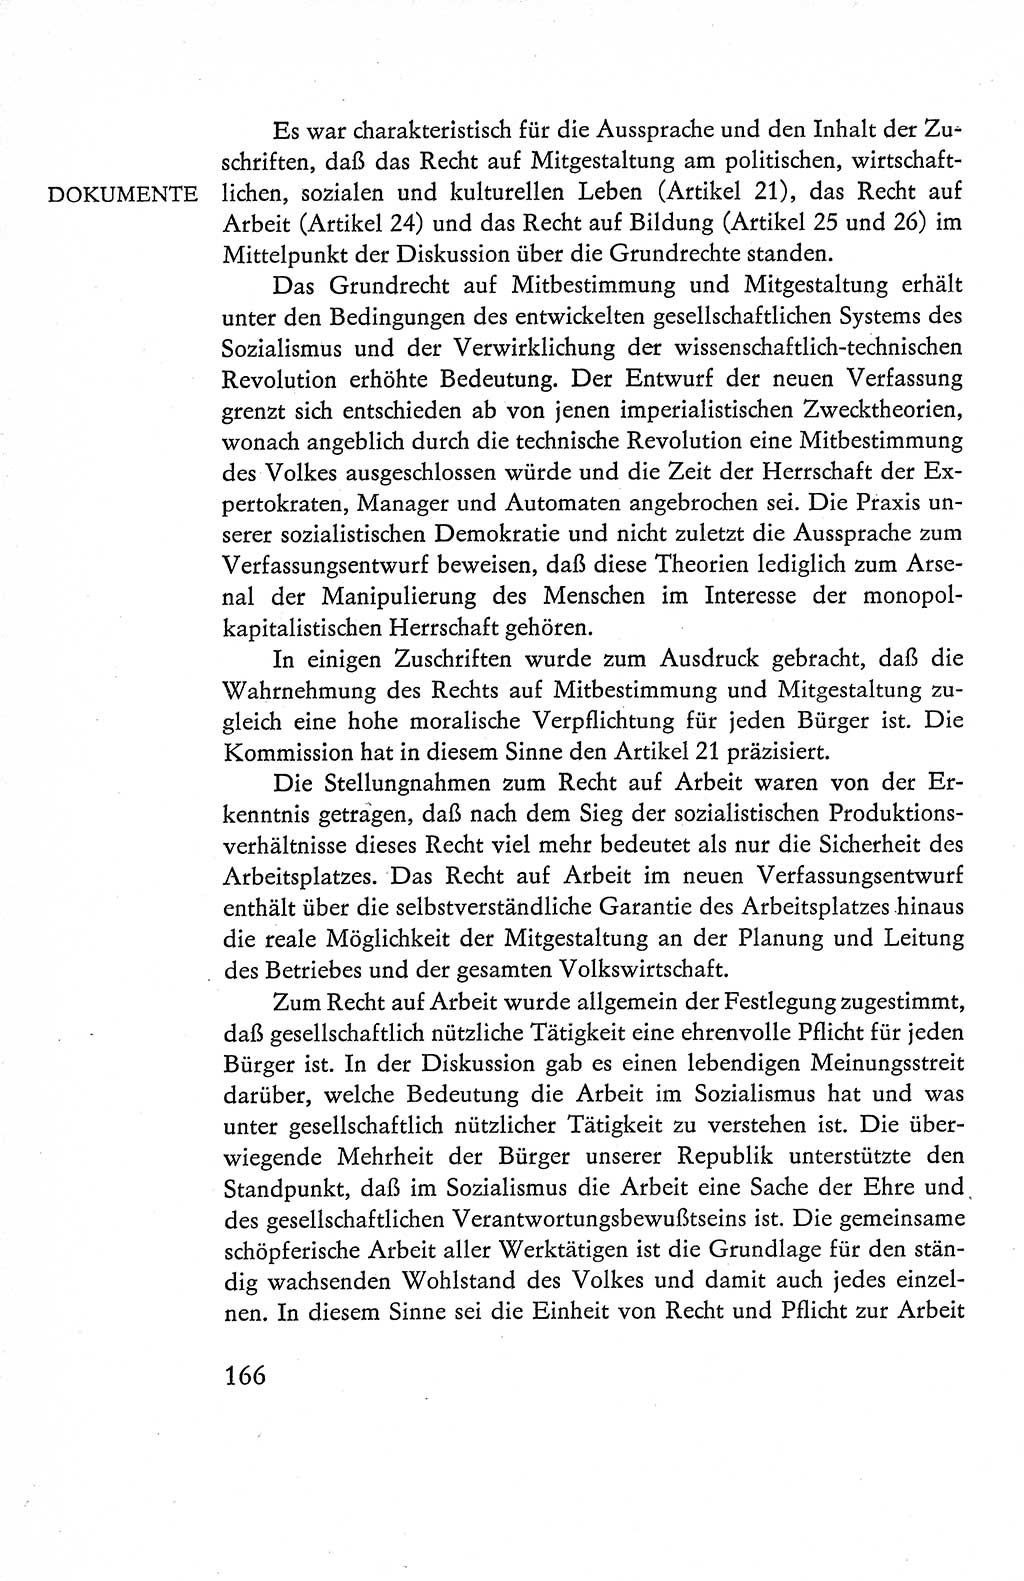 Verfassung der Deutschen Demokratischen Republik (DDR), Dokumente, Kommentar 1969, Band 1, Seite 166 (Verf. DDR Dok. Komm. 1969, Bd. 1, S. 166)